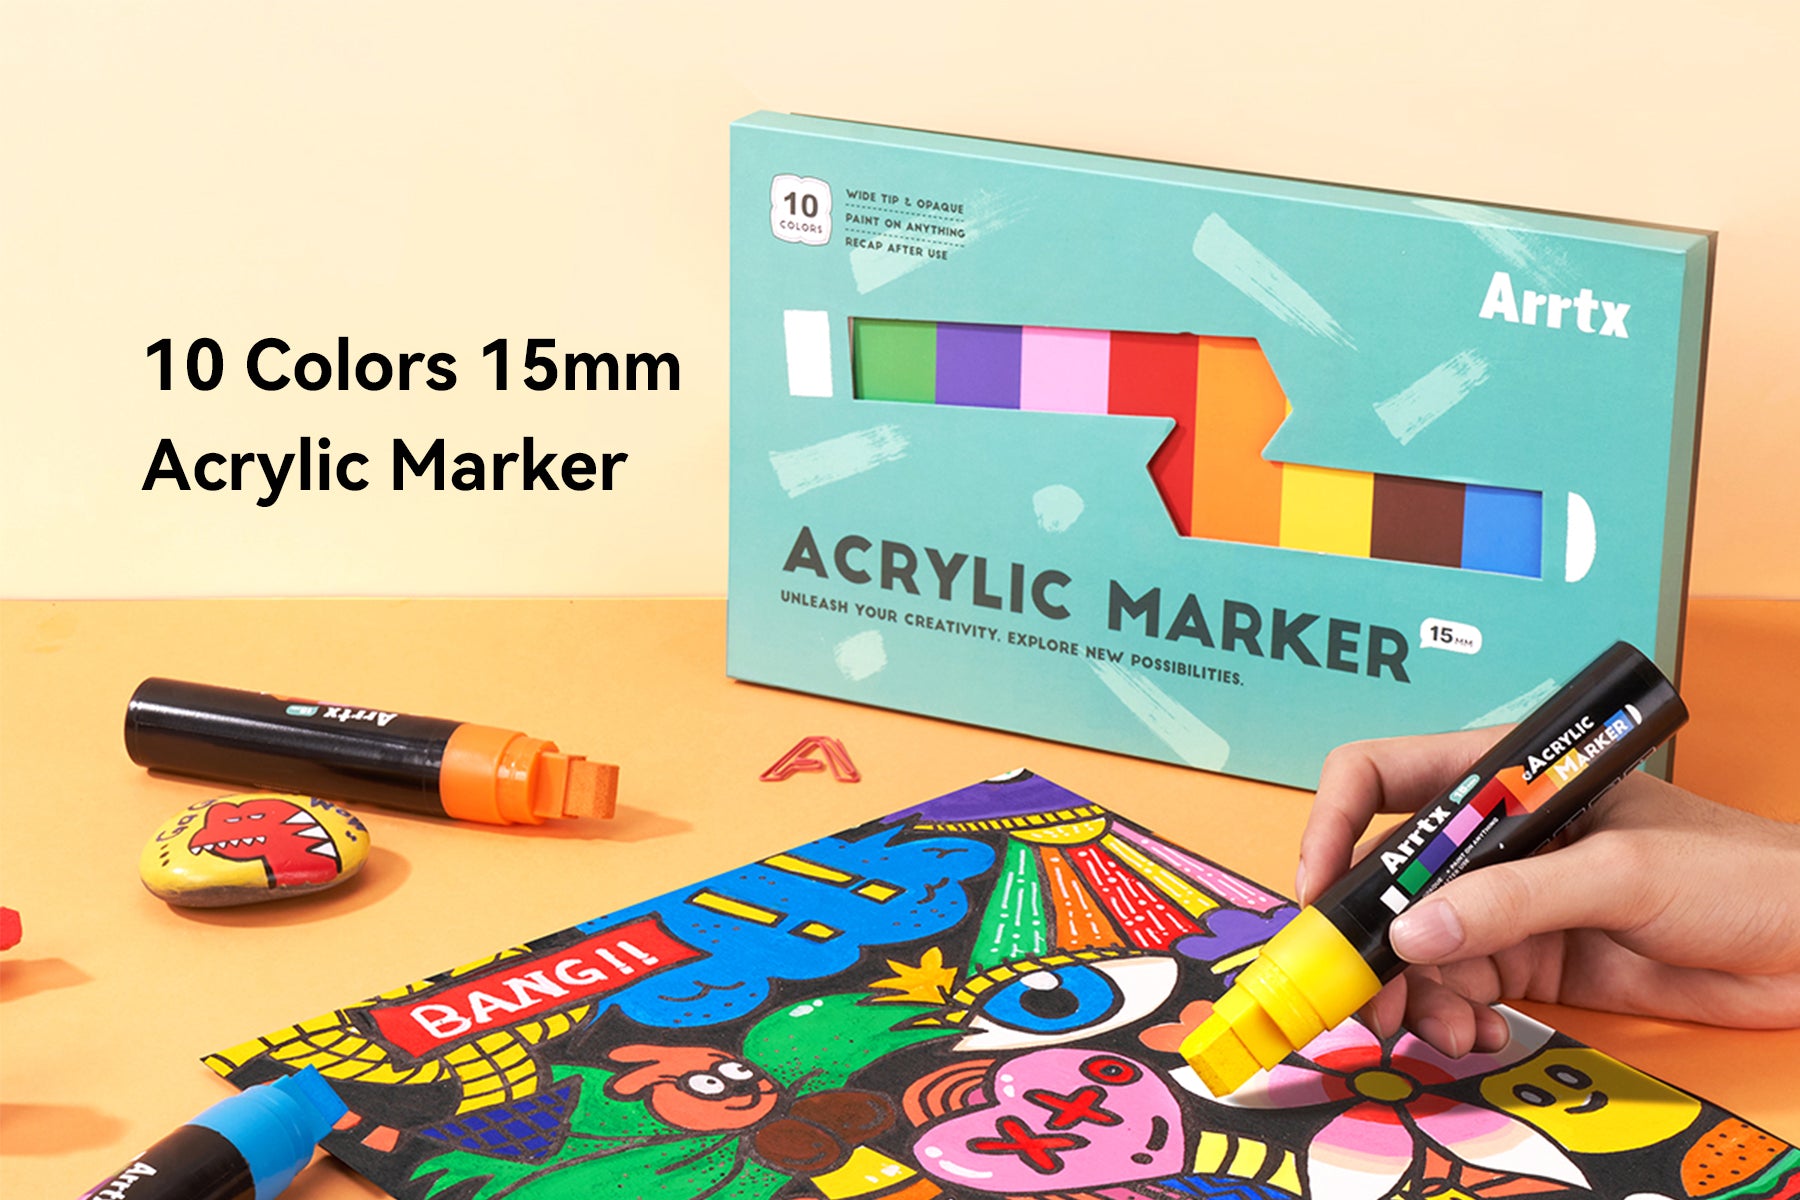 Le marqueur géant acrylique Arrtx 15 mm est ICI !!! 💡 Libérez la créativité à une toute nouvelle échelle !